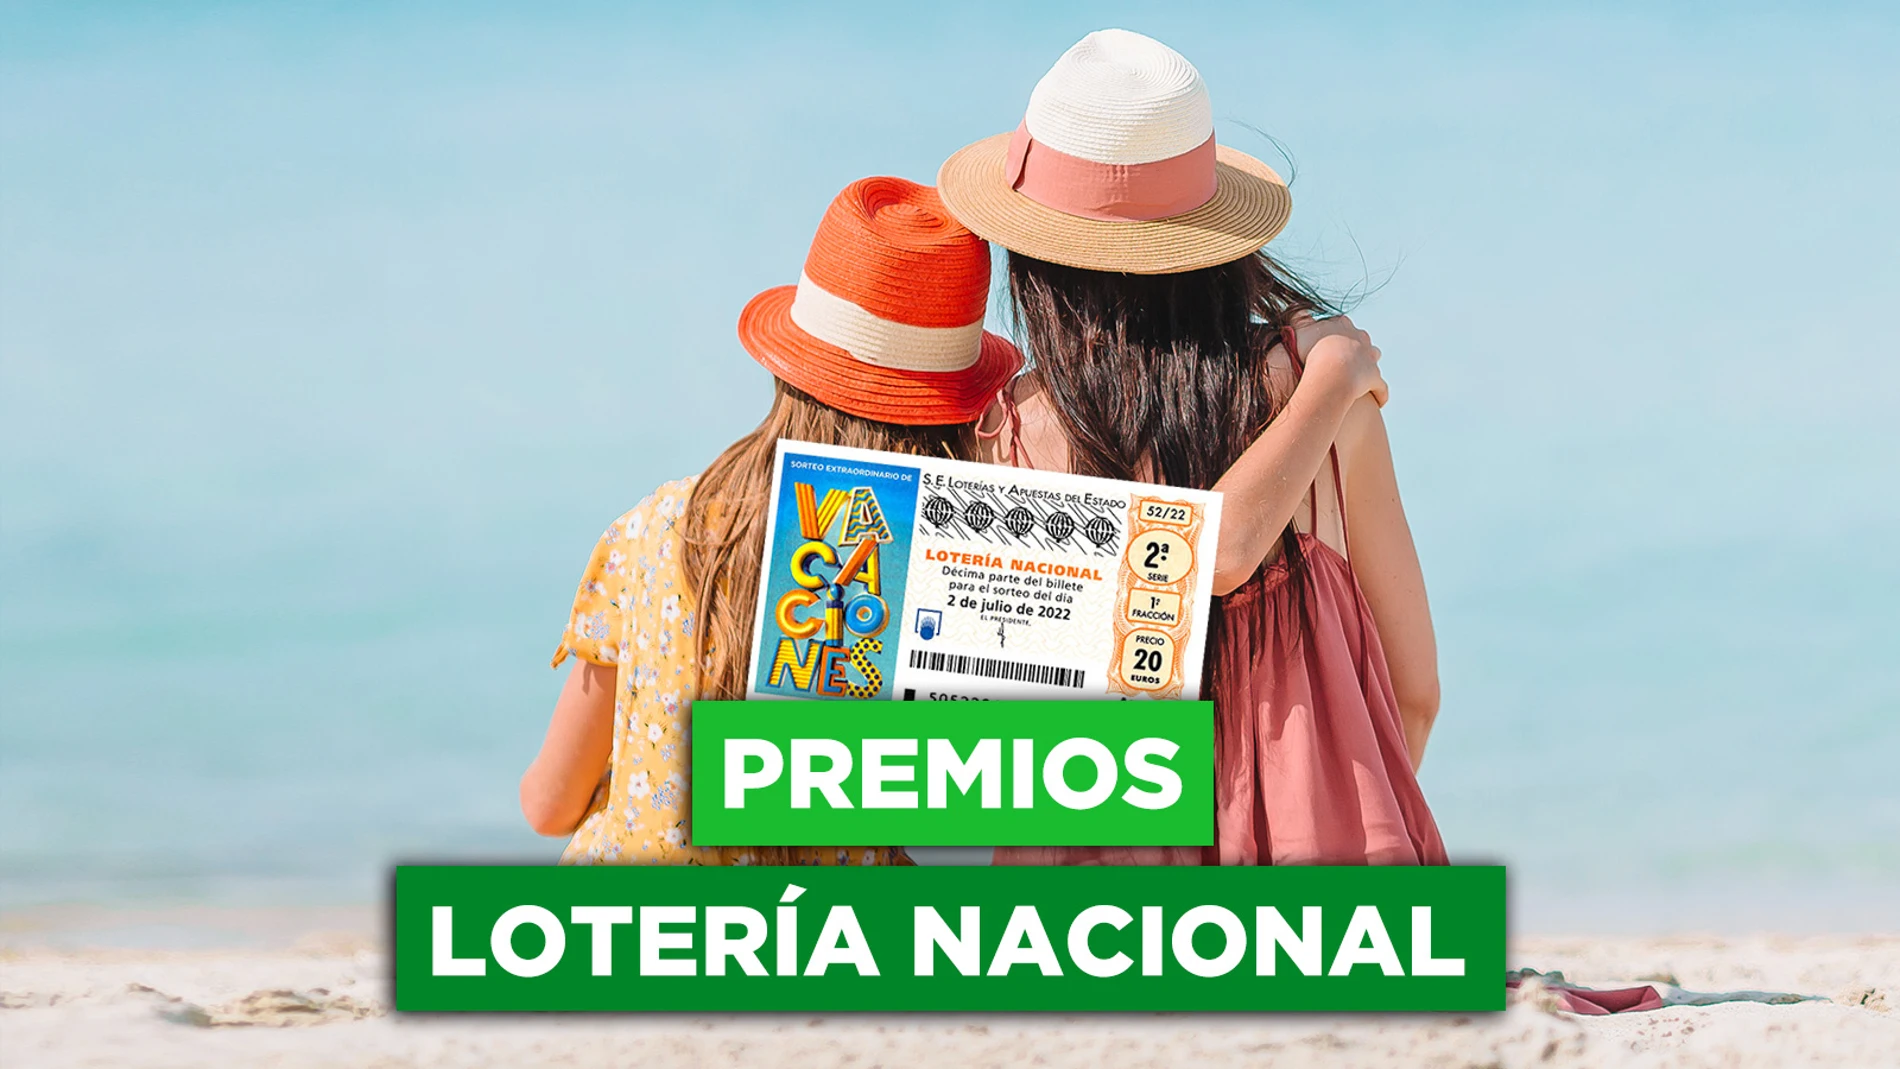 ¿Qué premios reparte el Sorteo Extraordinario de Lotería Nacional de Vacaciones 2022?